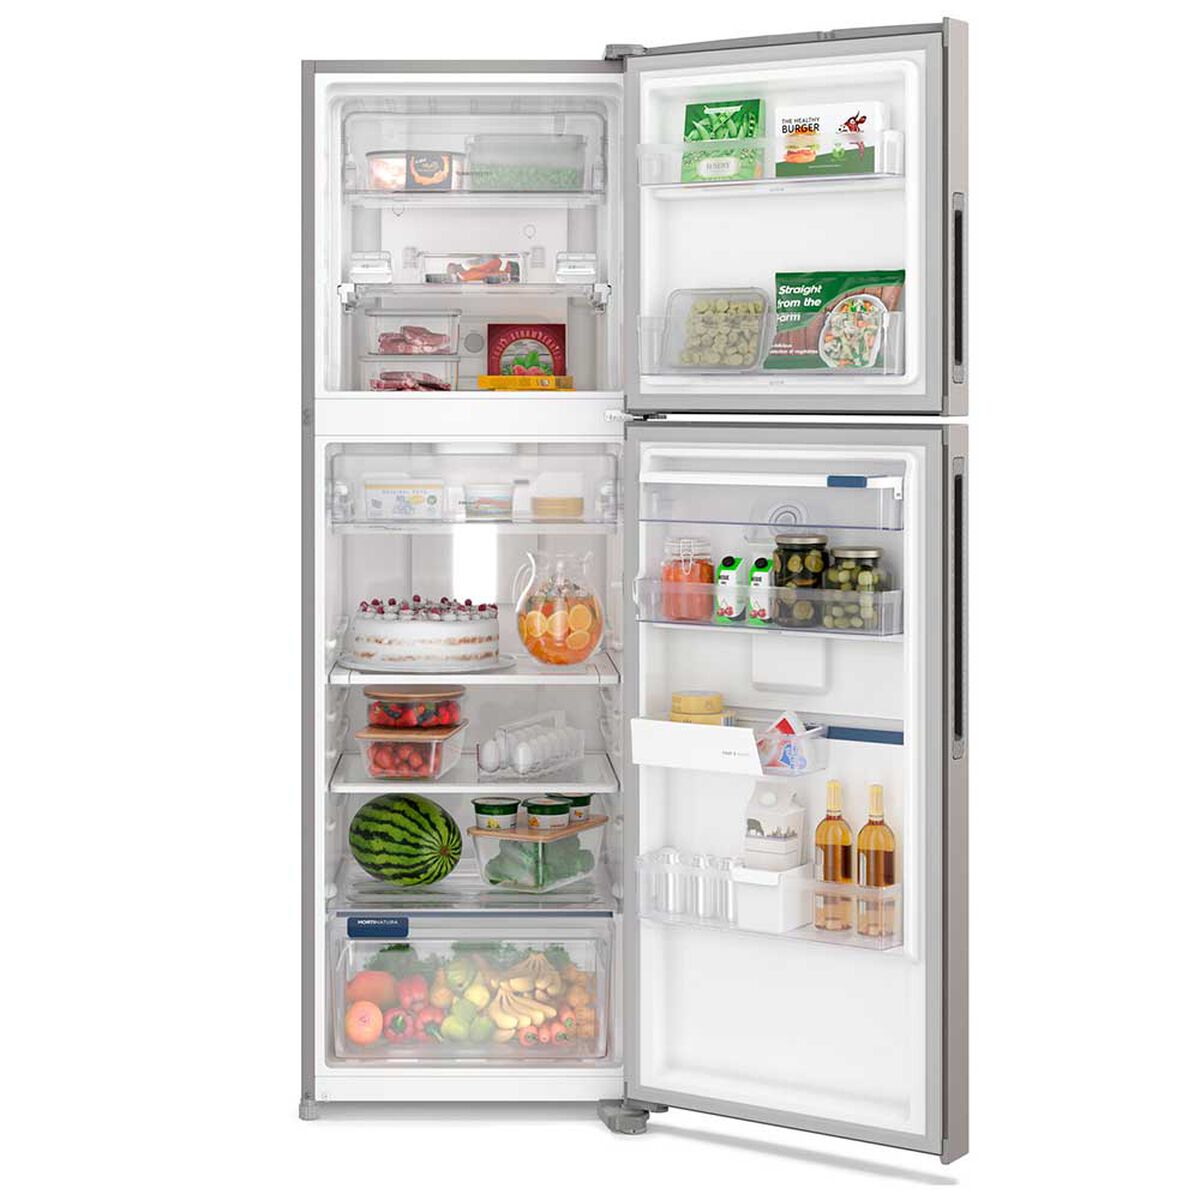 Refrigerador No Frost Fensa IW45S 409 lts